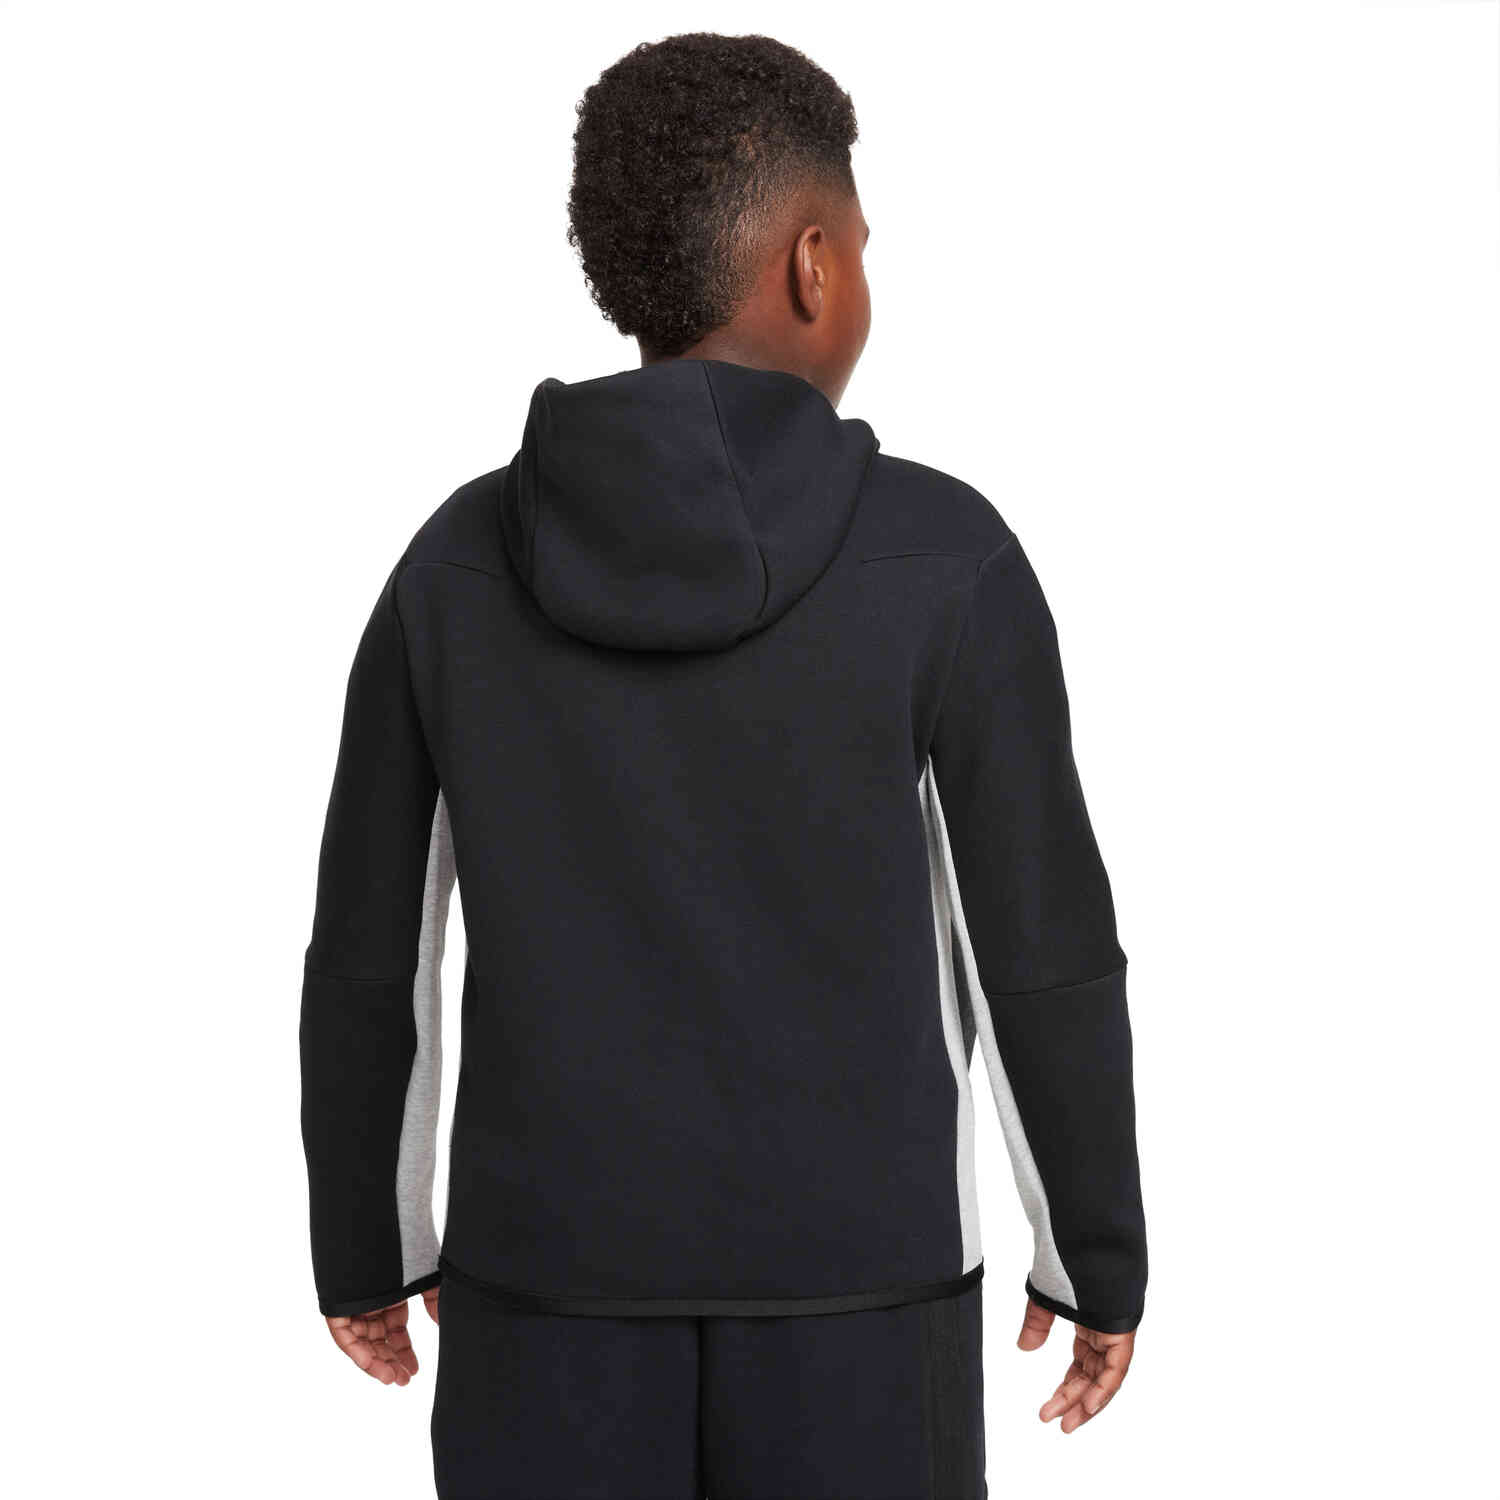 Nike Sportswear Tech Fleece Joggers Black/Dark Grey Heather/White